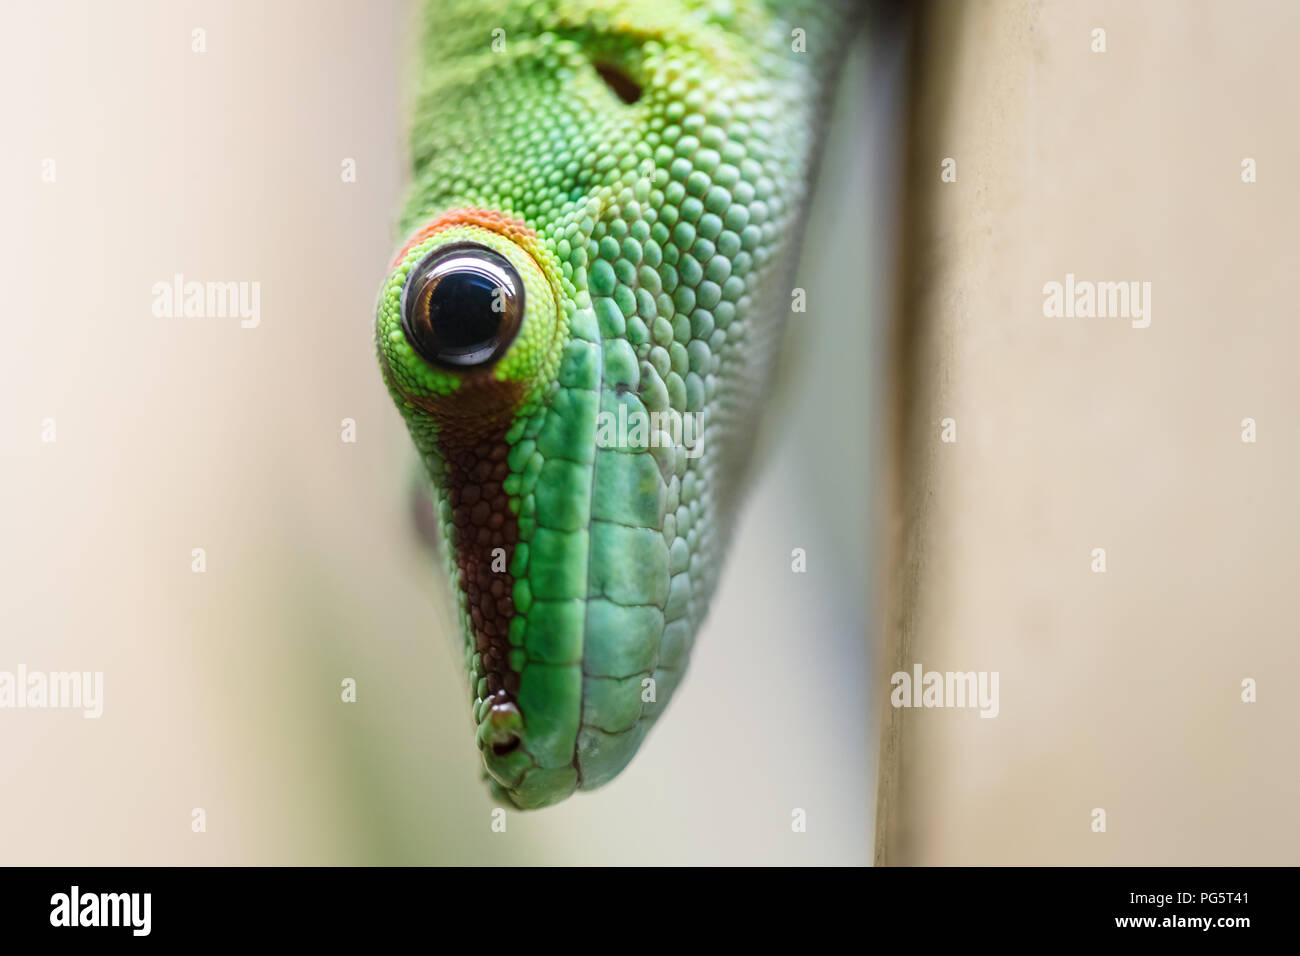 Close up green lizard eye Banque D'Images